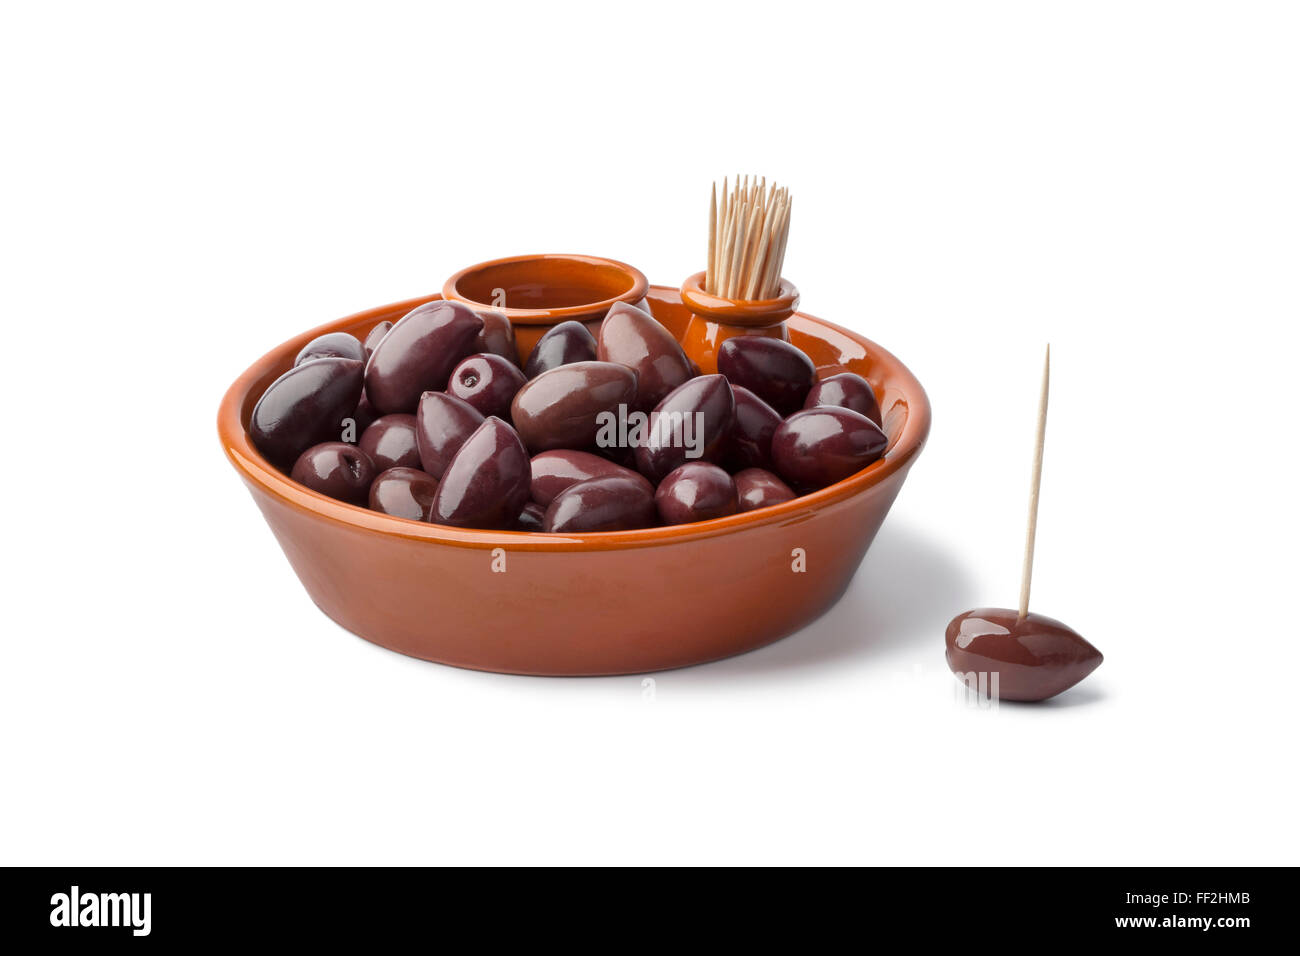 Bowl with black Calamata olives on white background Stock Photo